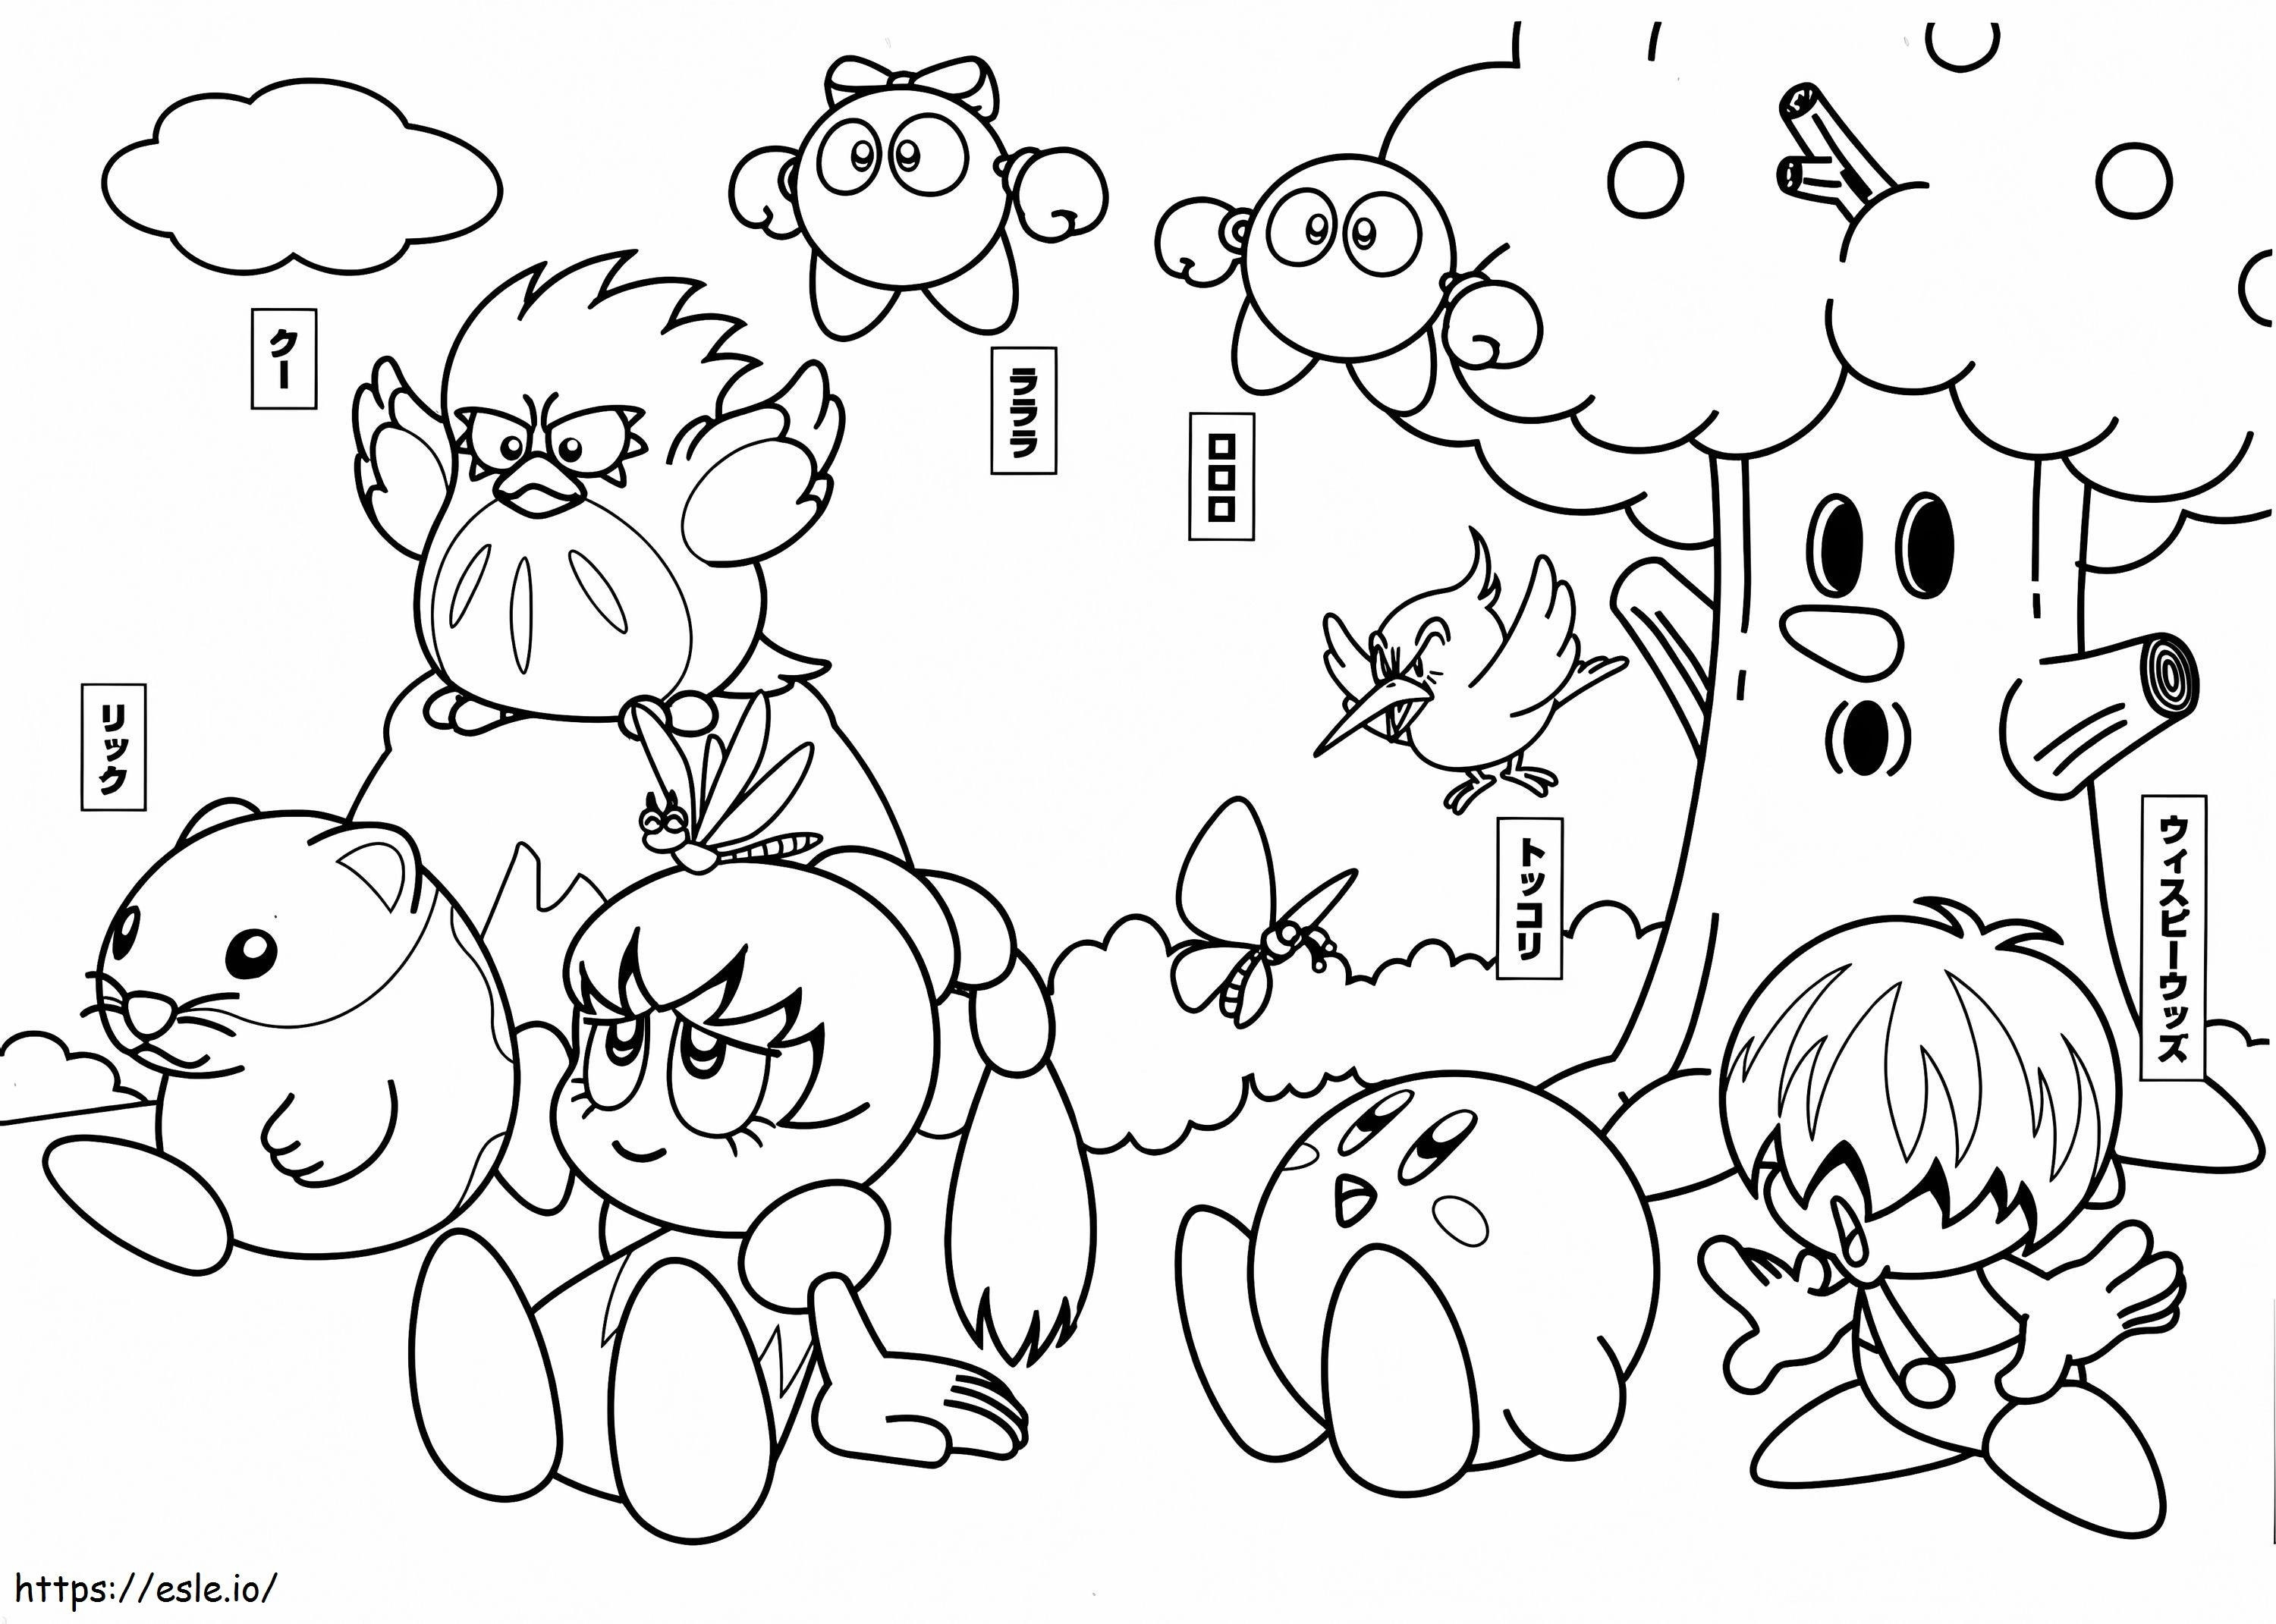 Kirby z przyjaciółmi kolorowanka